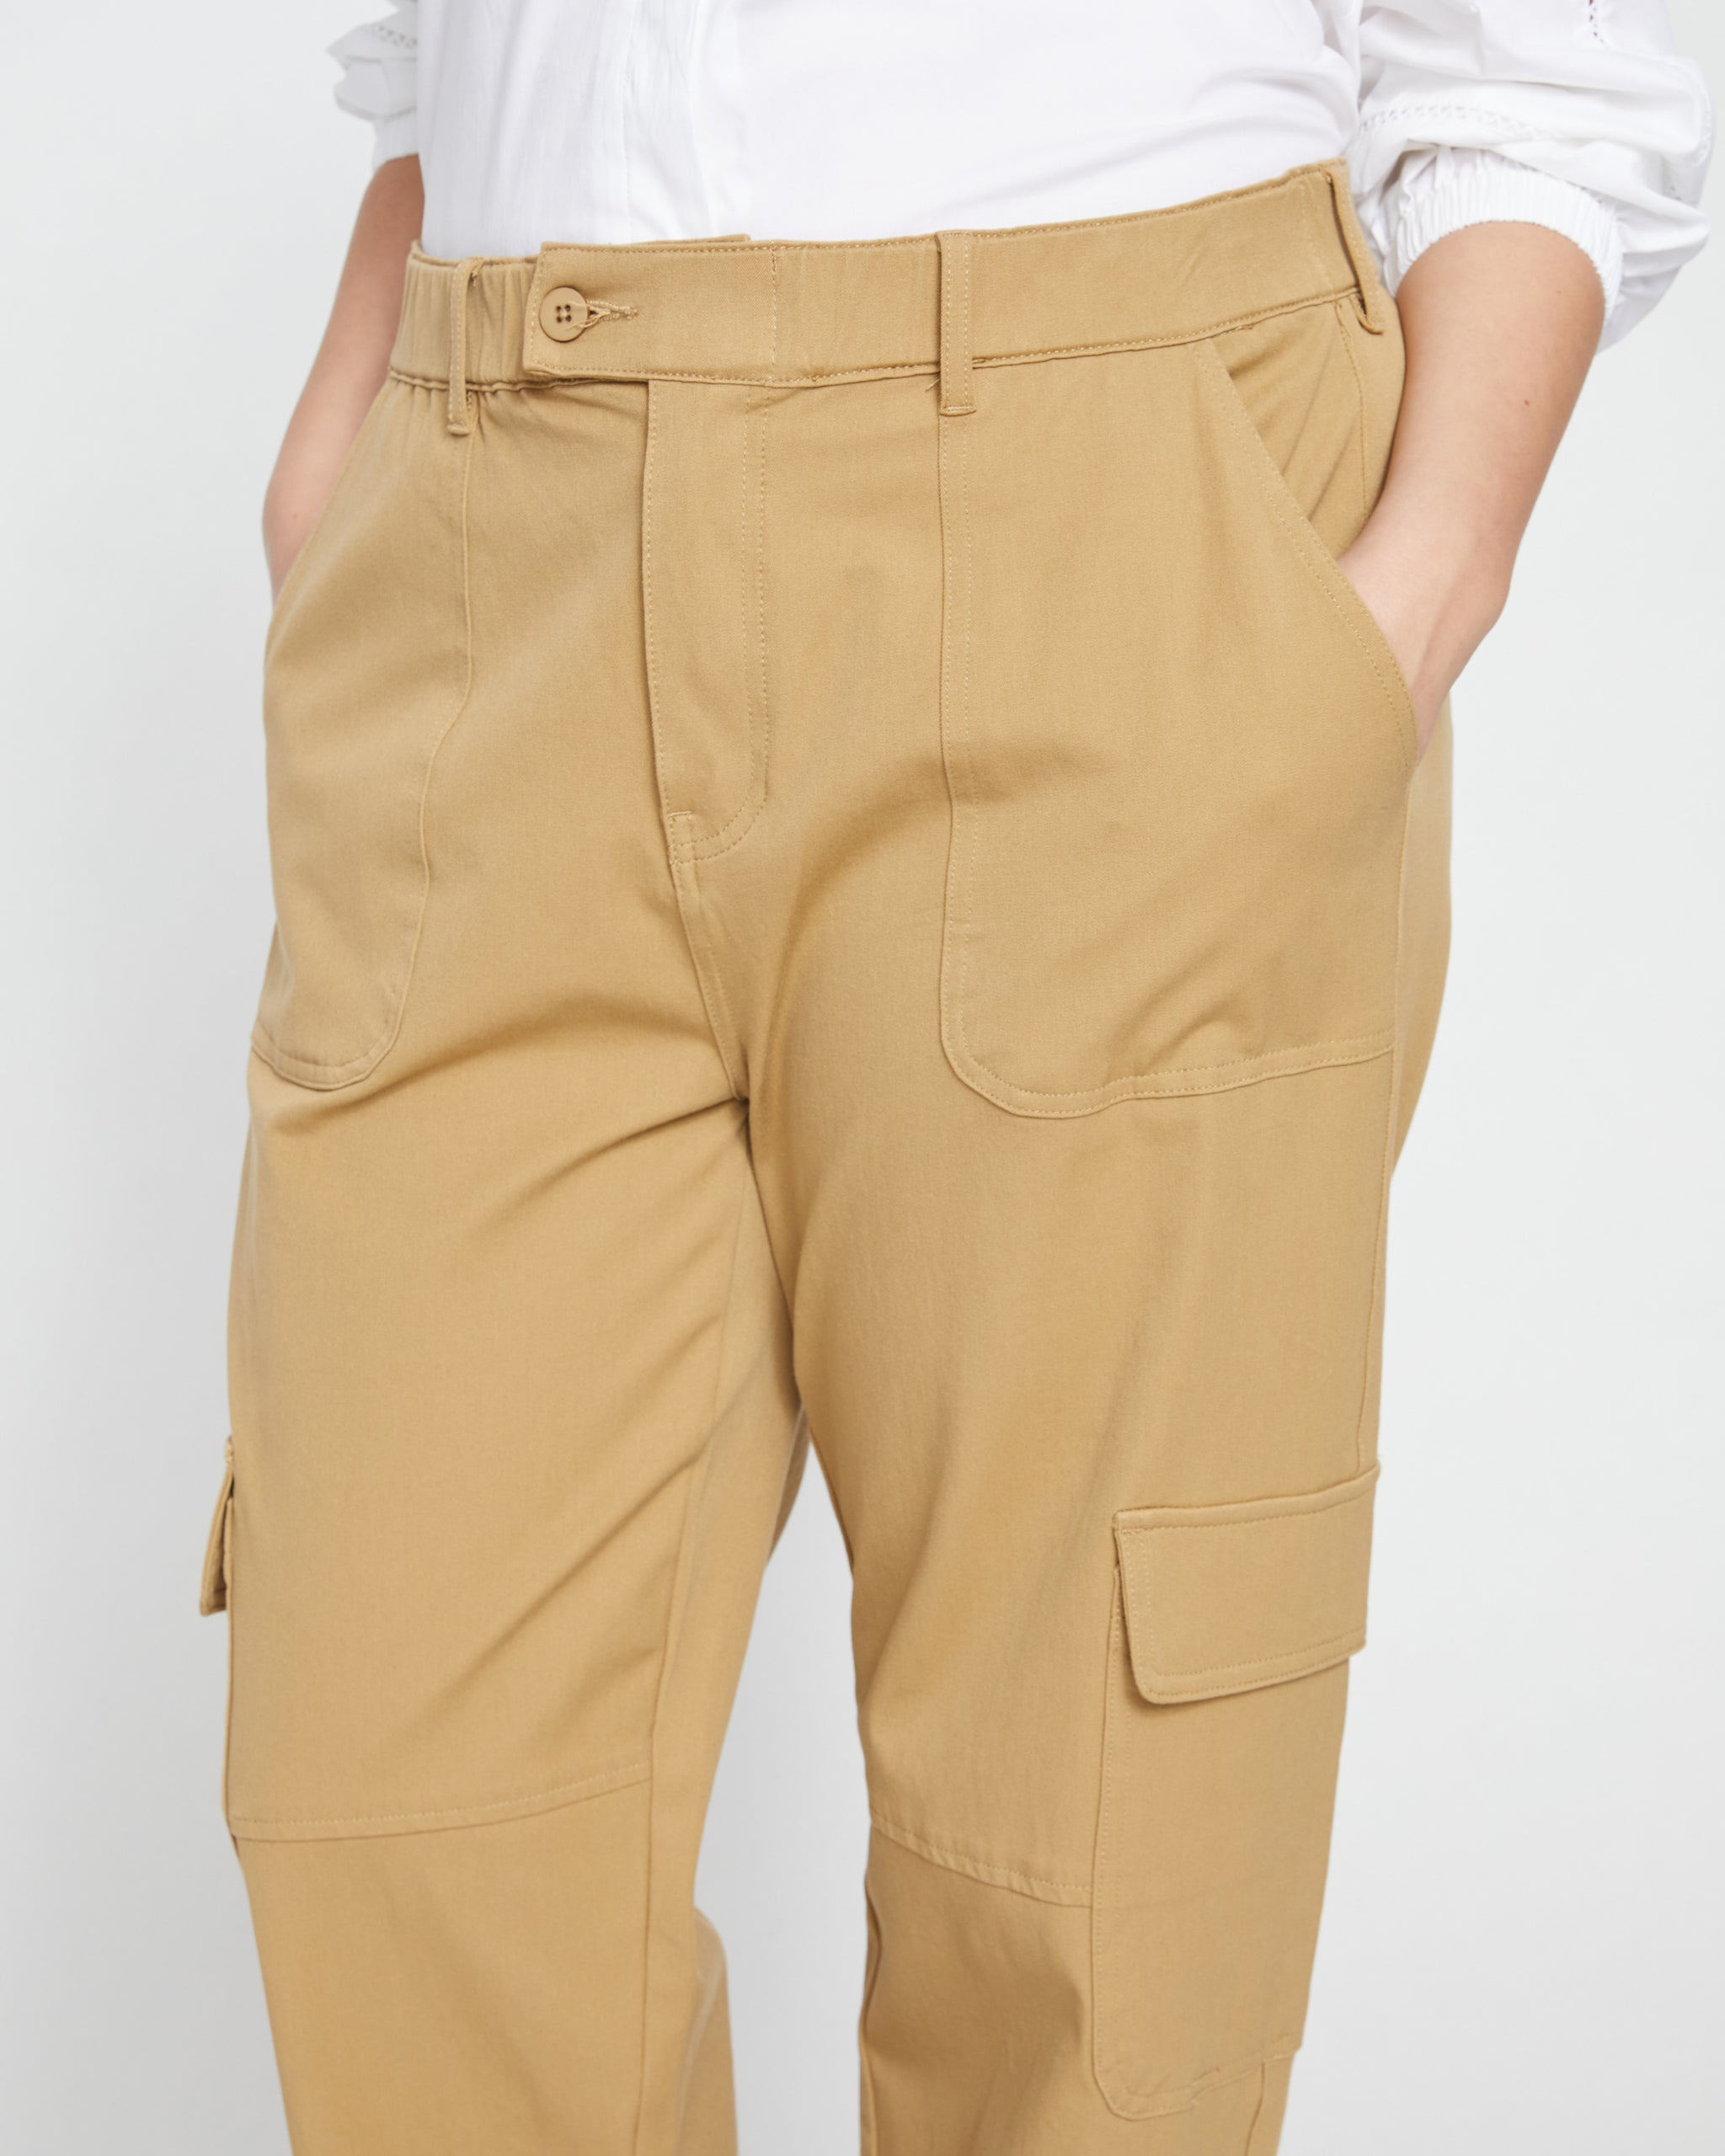 Buy Cream Cargo Pants for Men Online in India -Beyoung